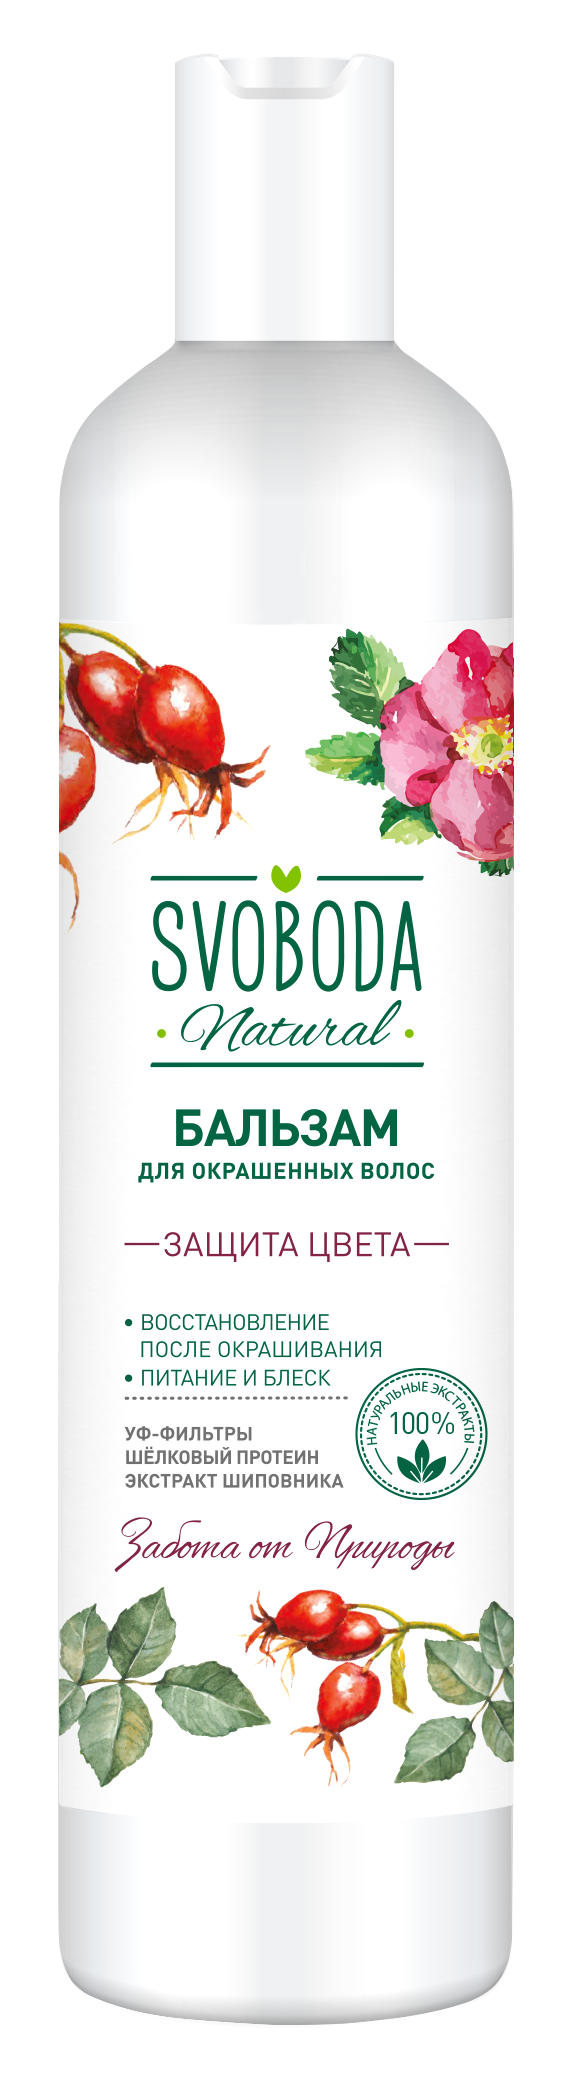 Бальзам-ополаскиватель Svoboda Natural Защита цвета для окрашенных волос 430 мл body boom бальзам для волос био ультра забота matcha